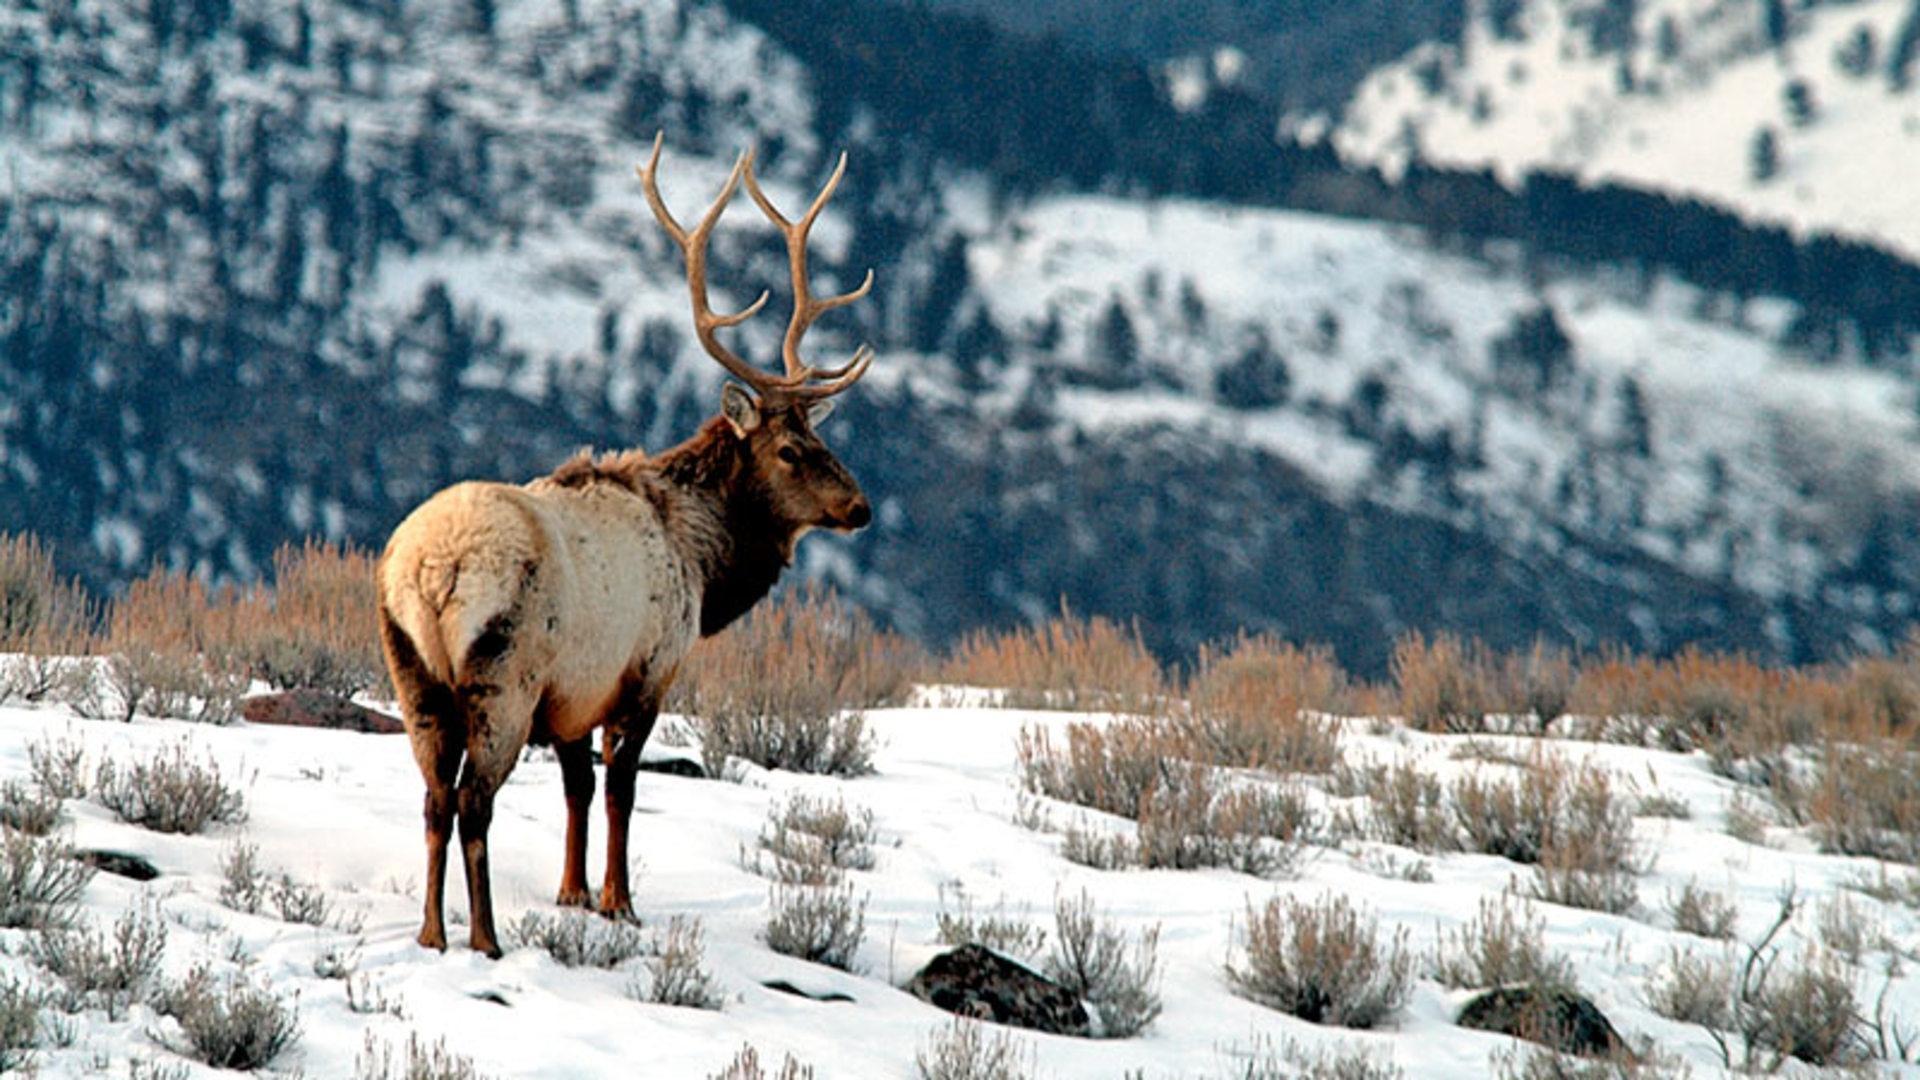 Winter Elk HD desktop wallpaper, Widescreen, High Definition